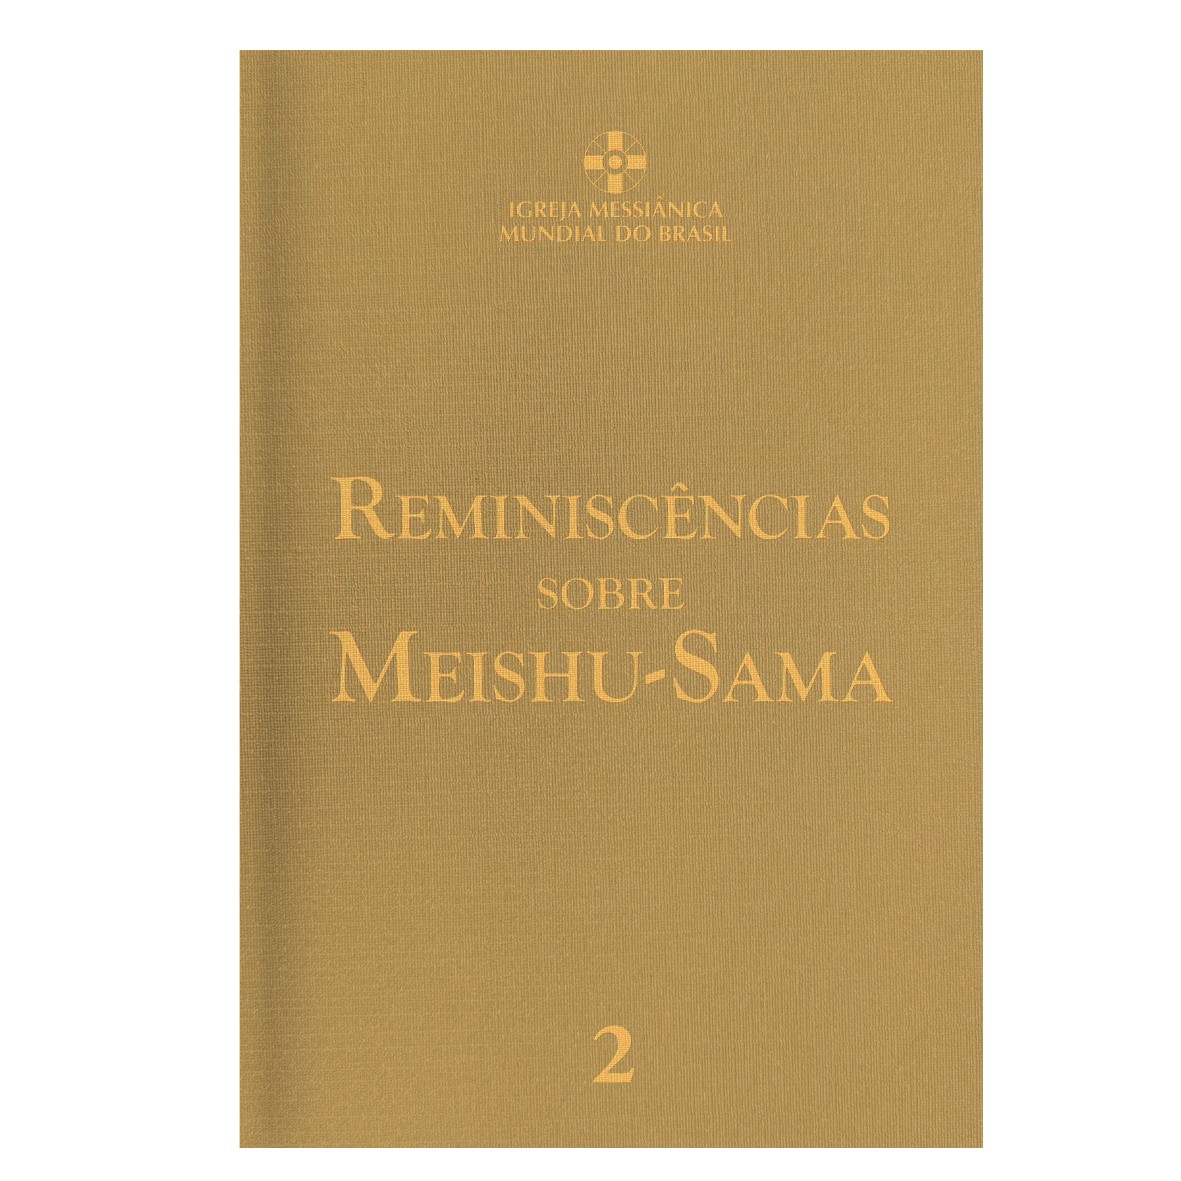 Reminiscncias sobre Meishu-Sama - Vol.2 - Revisado